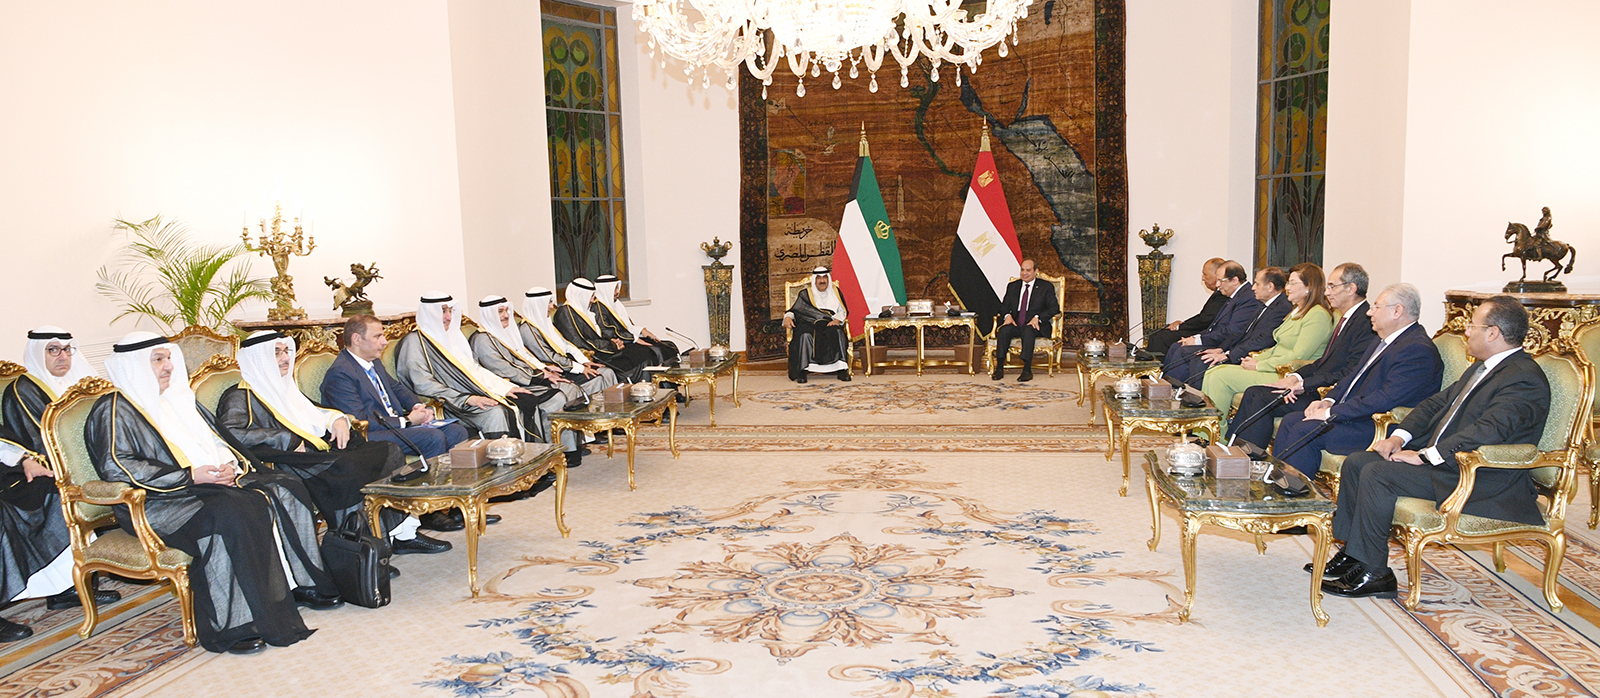 سمو أمير البلاد ورئيس جمهورية مصر العربية يترأسان جلسة المباحثات الرسمية